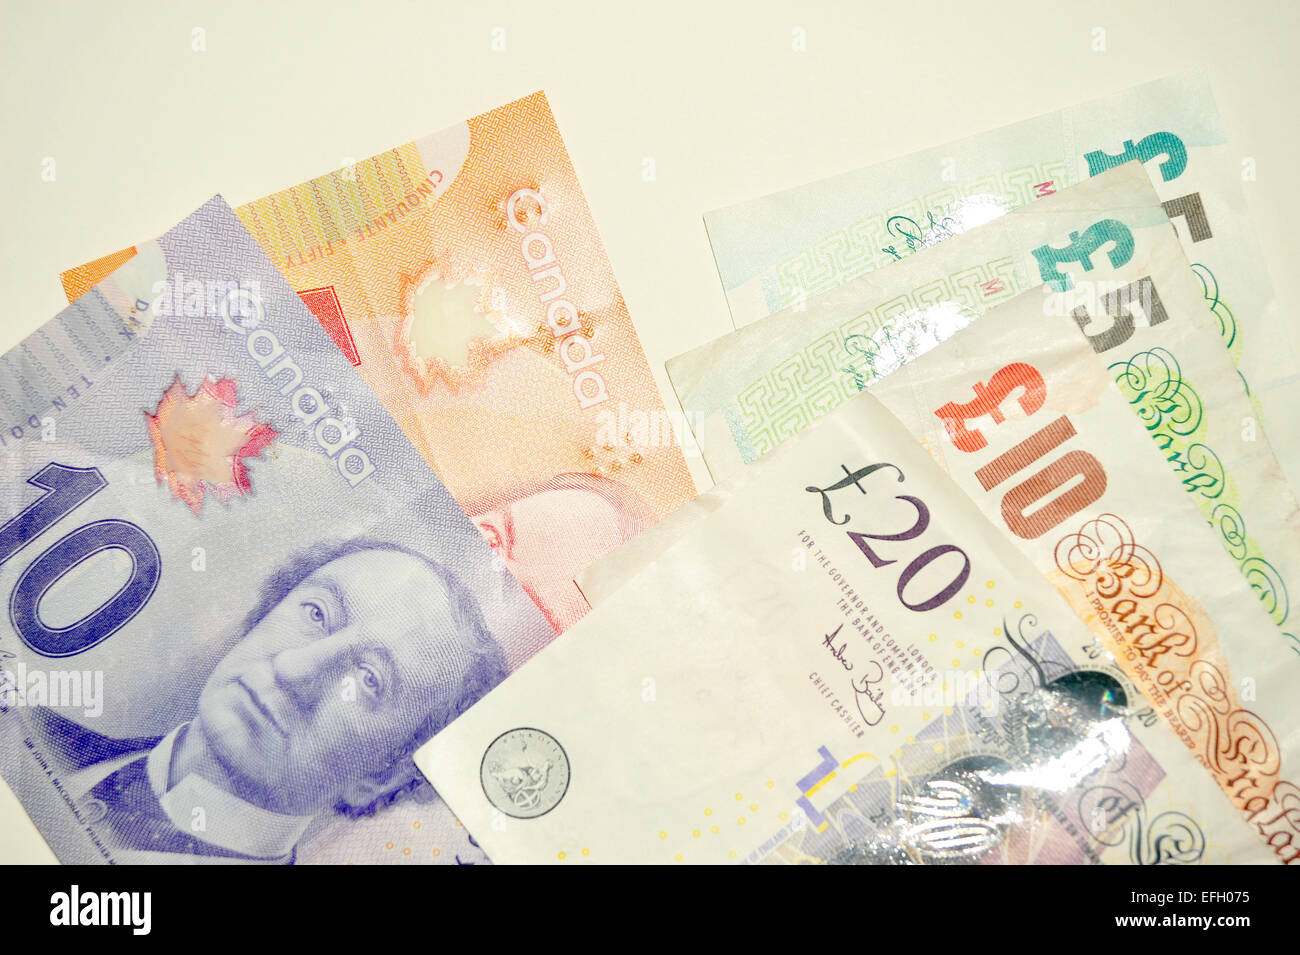 Eine Sammlung von kanadischen Dollar und britisches Pfund Noten vor einem weißen Hintergrund. Stockfoto